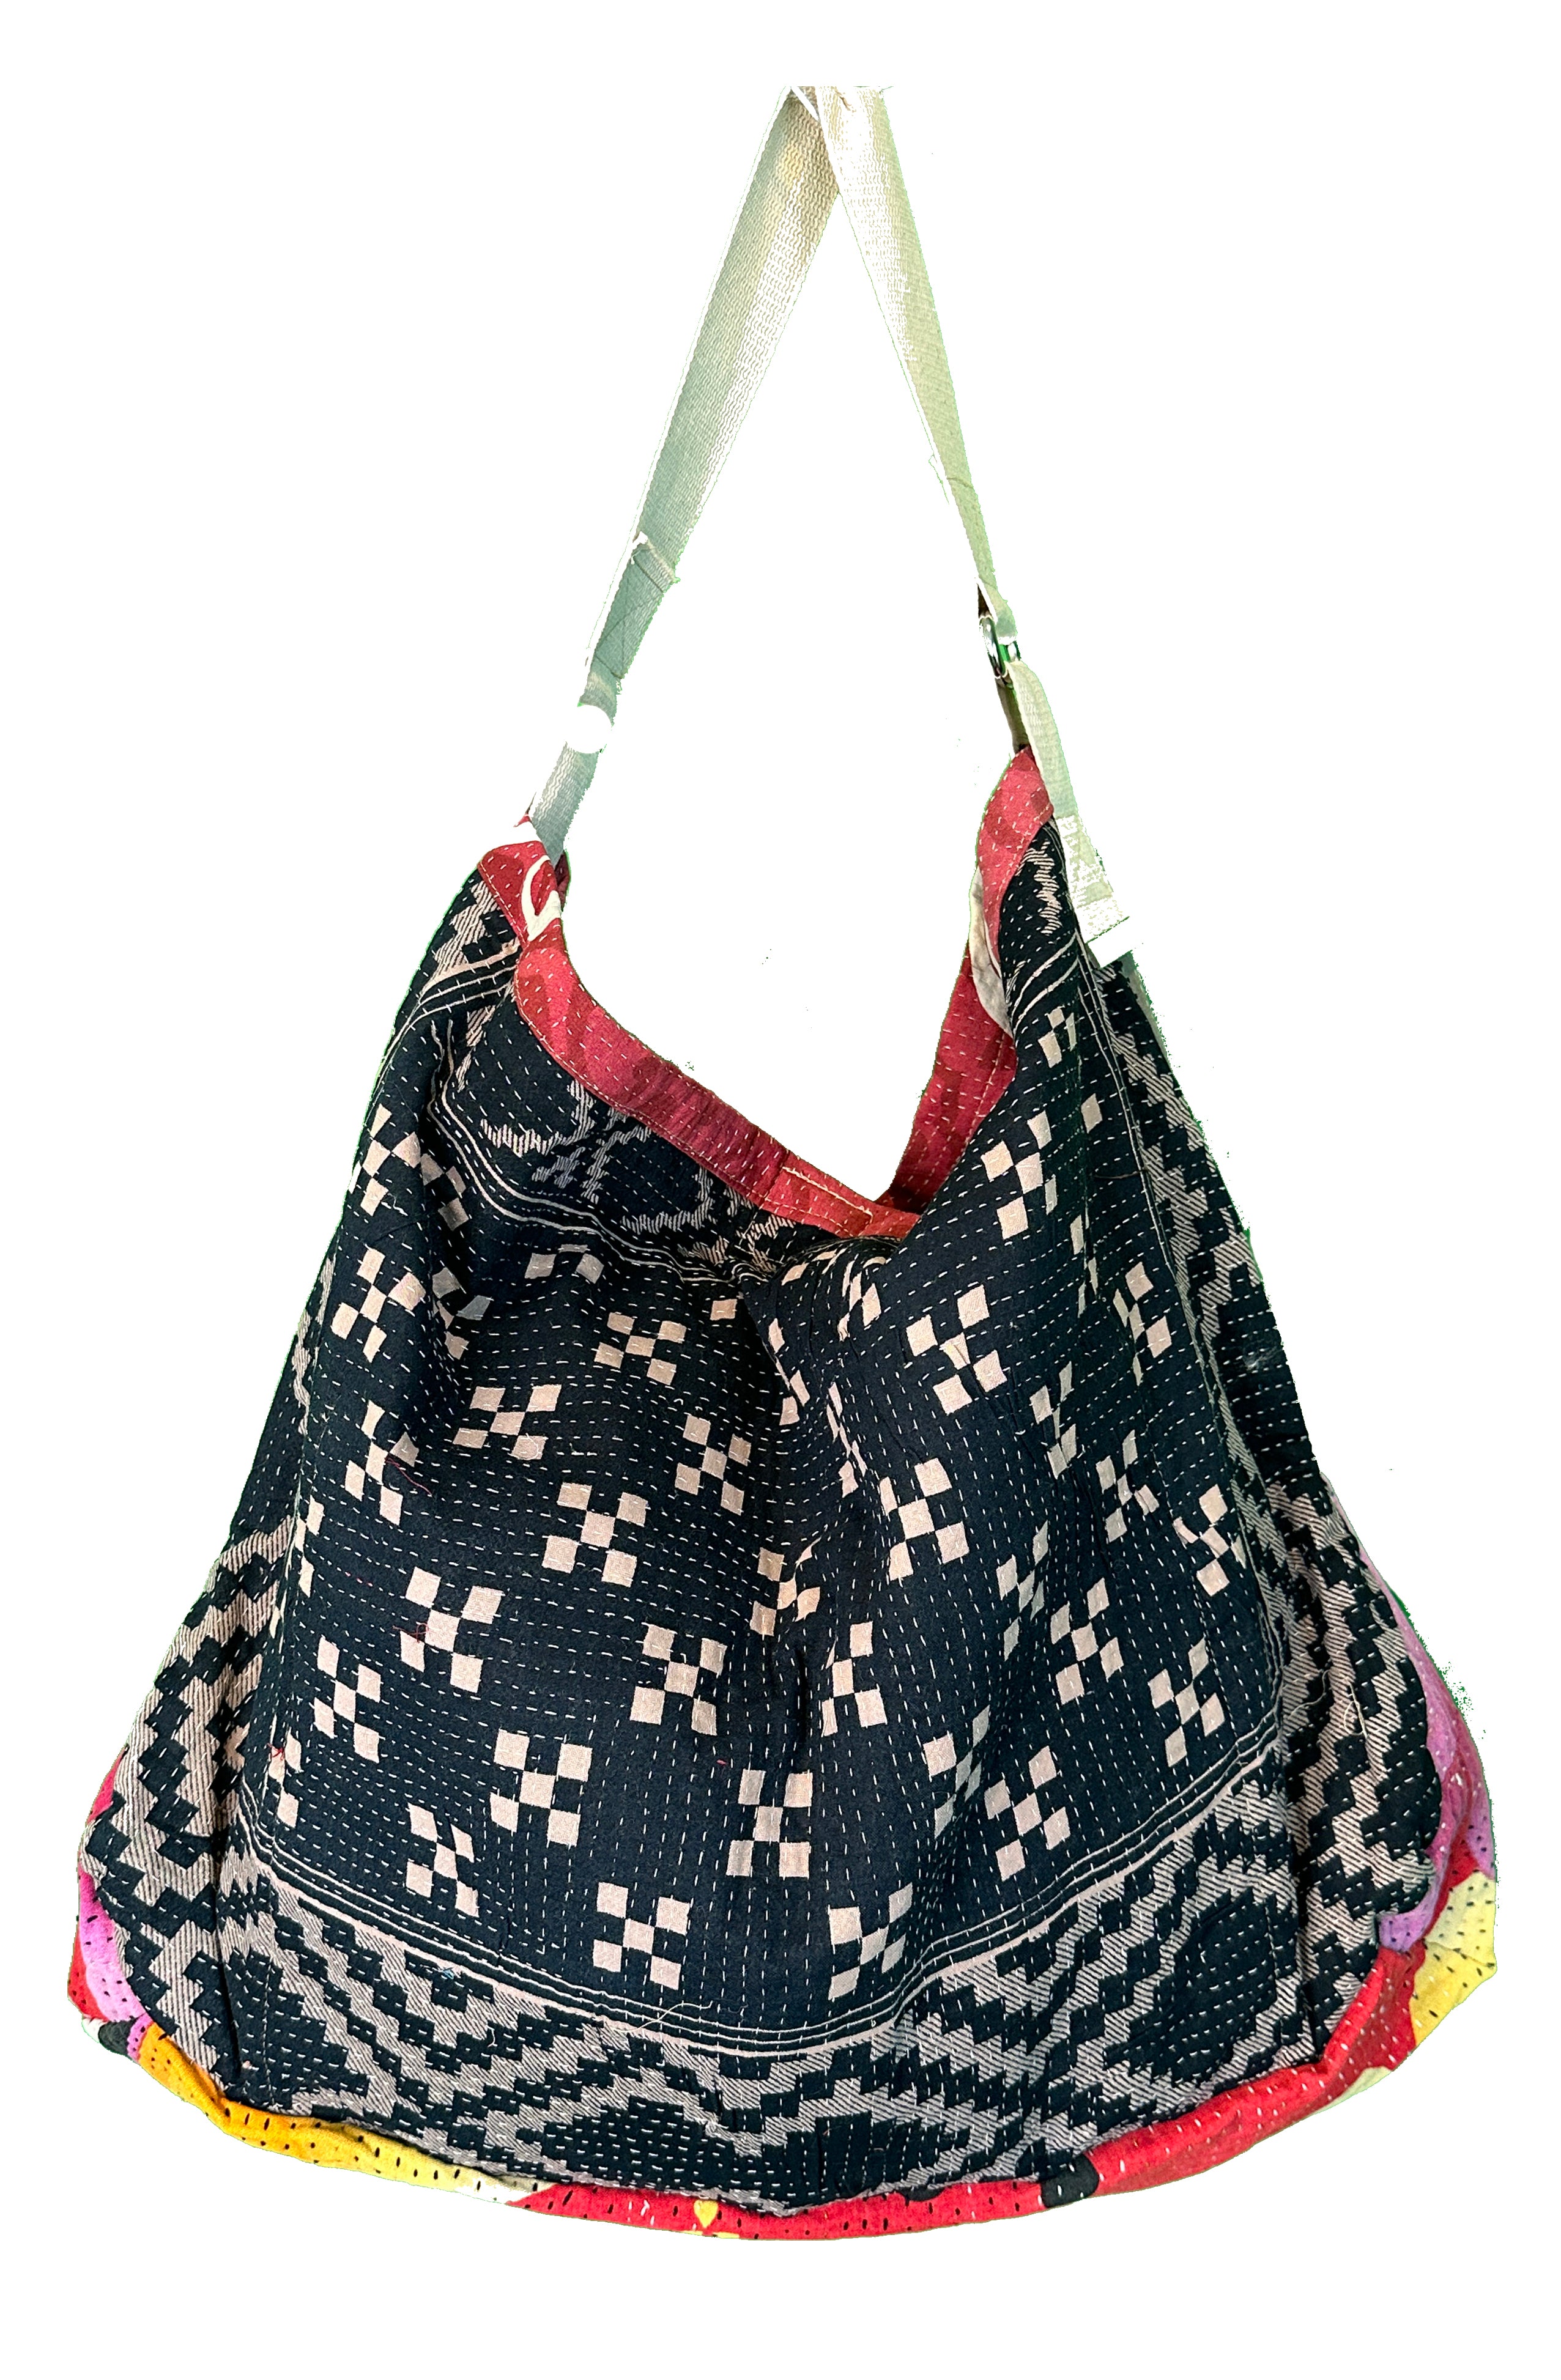 Hooked: Balenciaga Bazar Bags